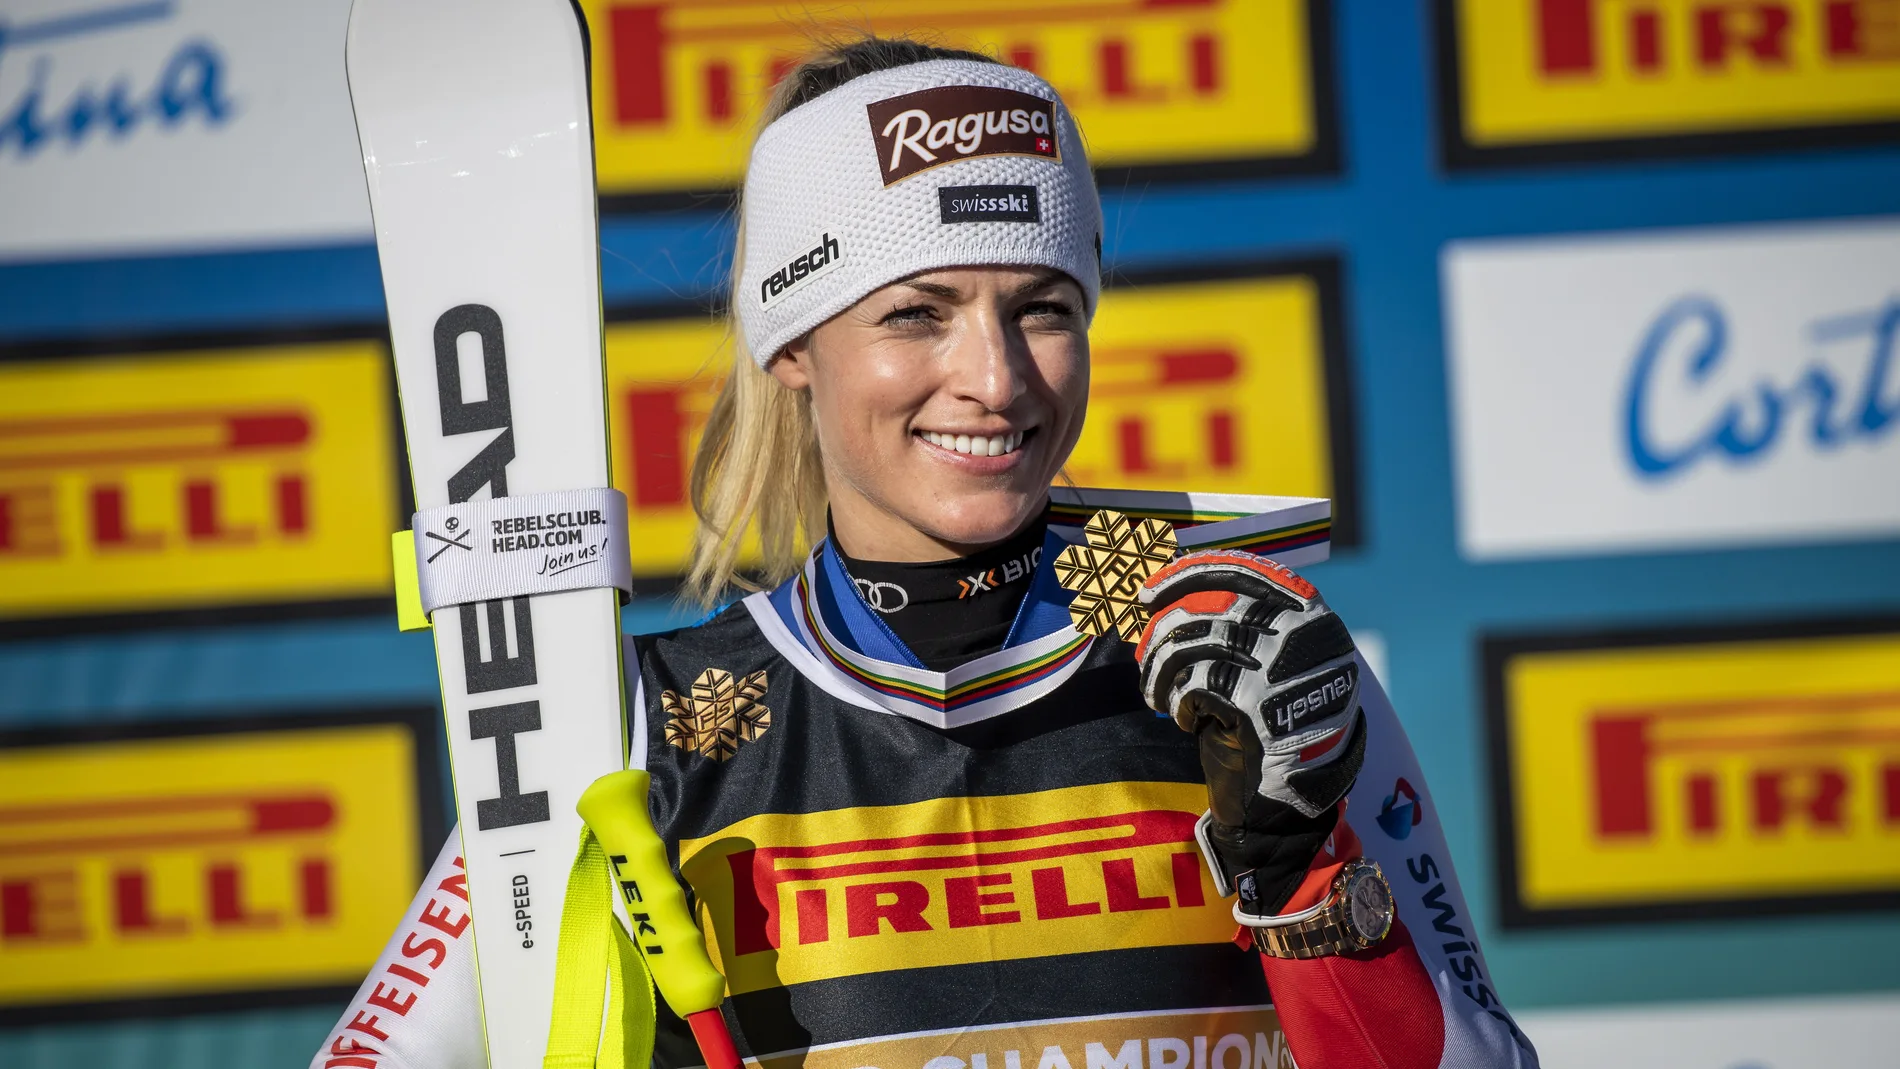 La suiza Lara Gut-Behrami posa con su medalla de oro en el podio tras ganar la prueba femenina de Súper G de los Campeonatos del Mundo de Esquí Alpino FIS 2021 en Cortina d'Ampezzo, Italia, el 11 de febrero de 2021.  EFE/EPA/JEAN-CHRISTOPHE BOTT